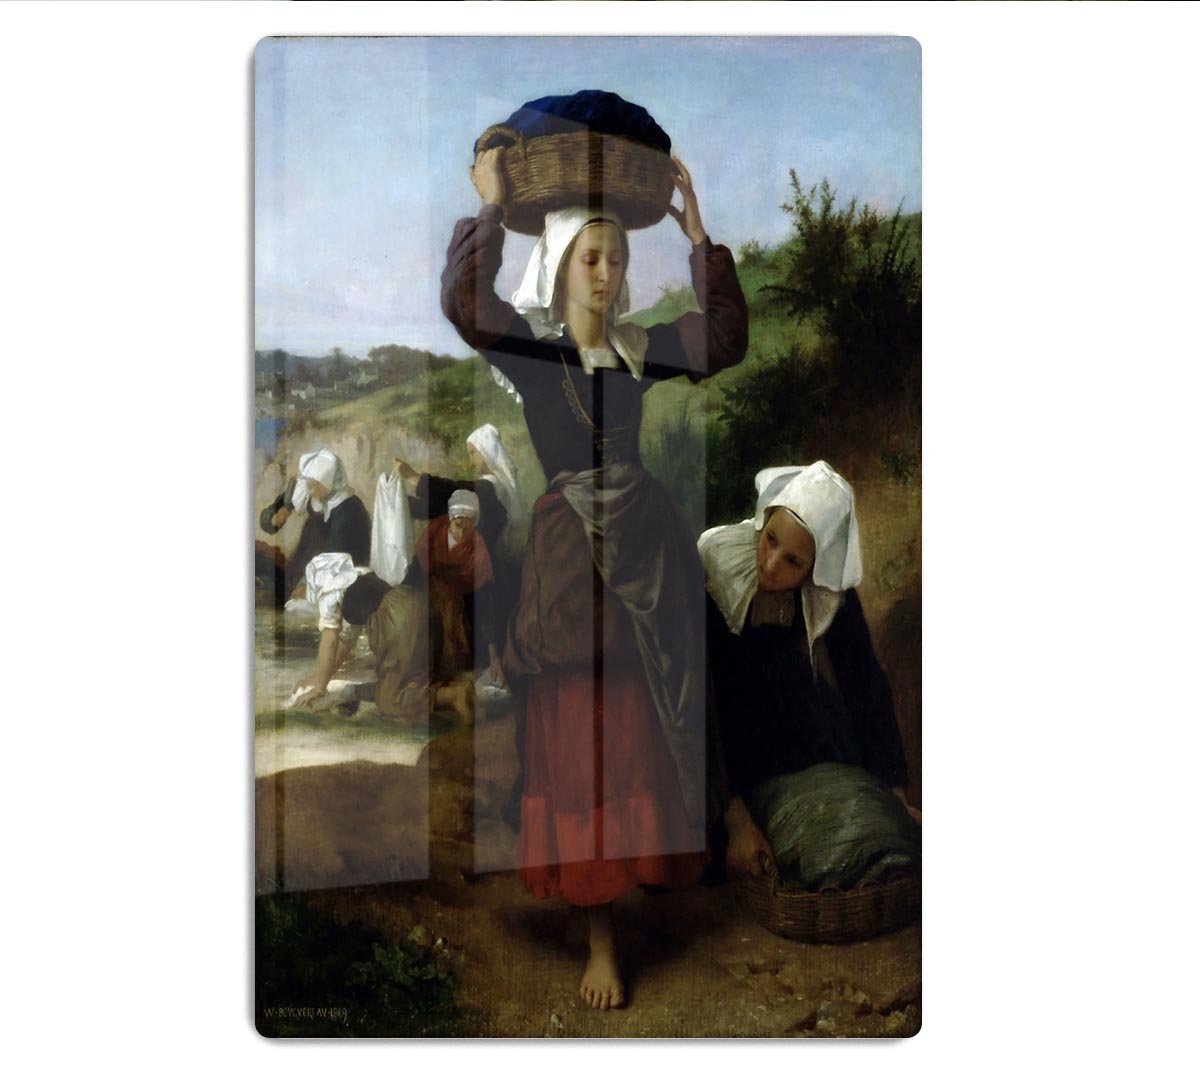 Washerwomen of Fouesnant By Bouguereau HD Metal Print